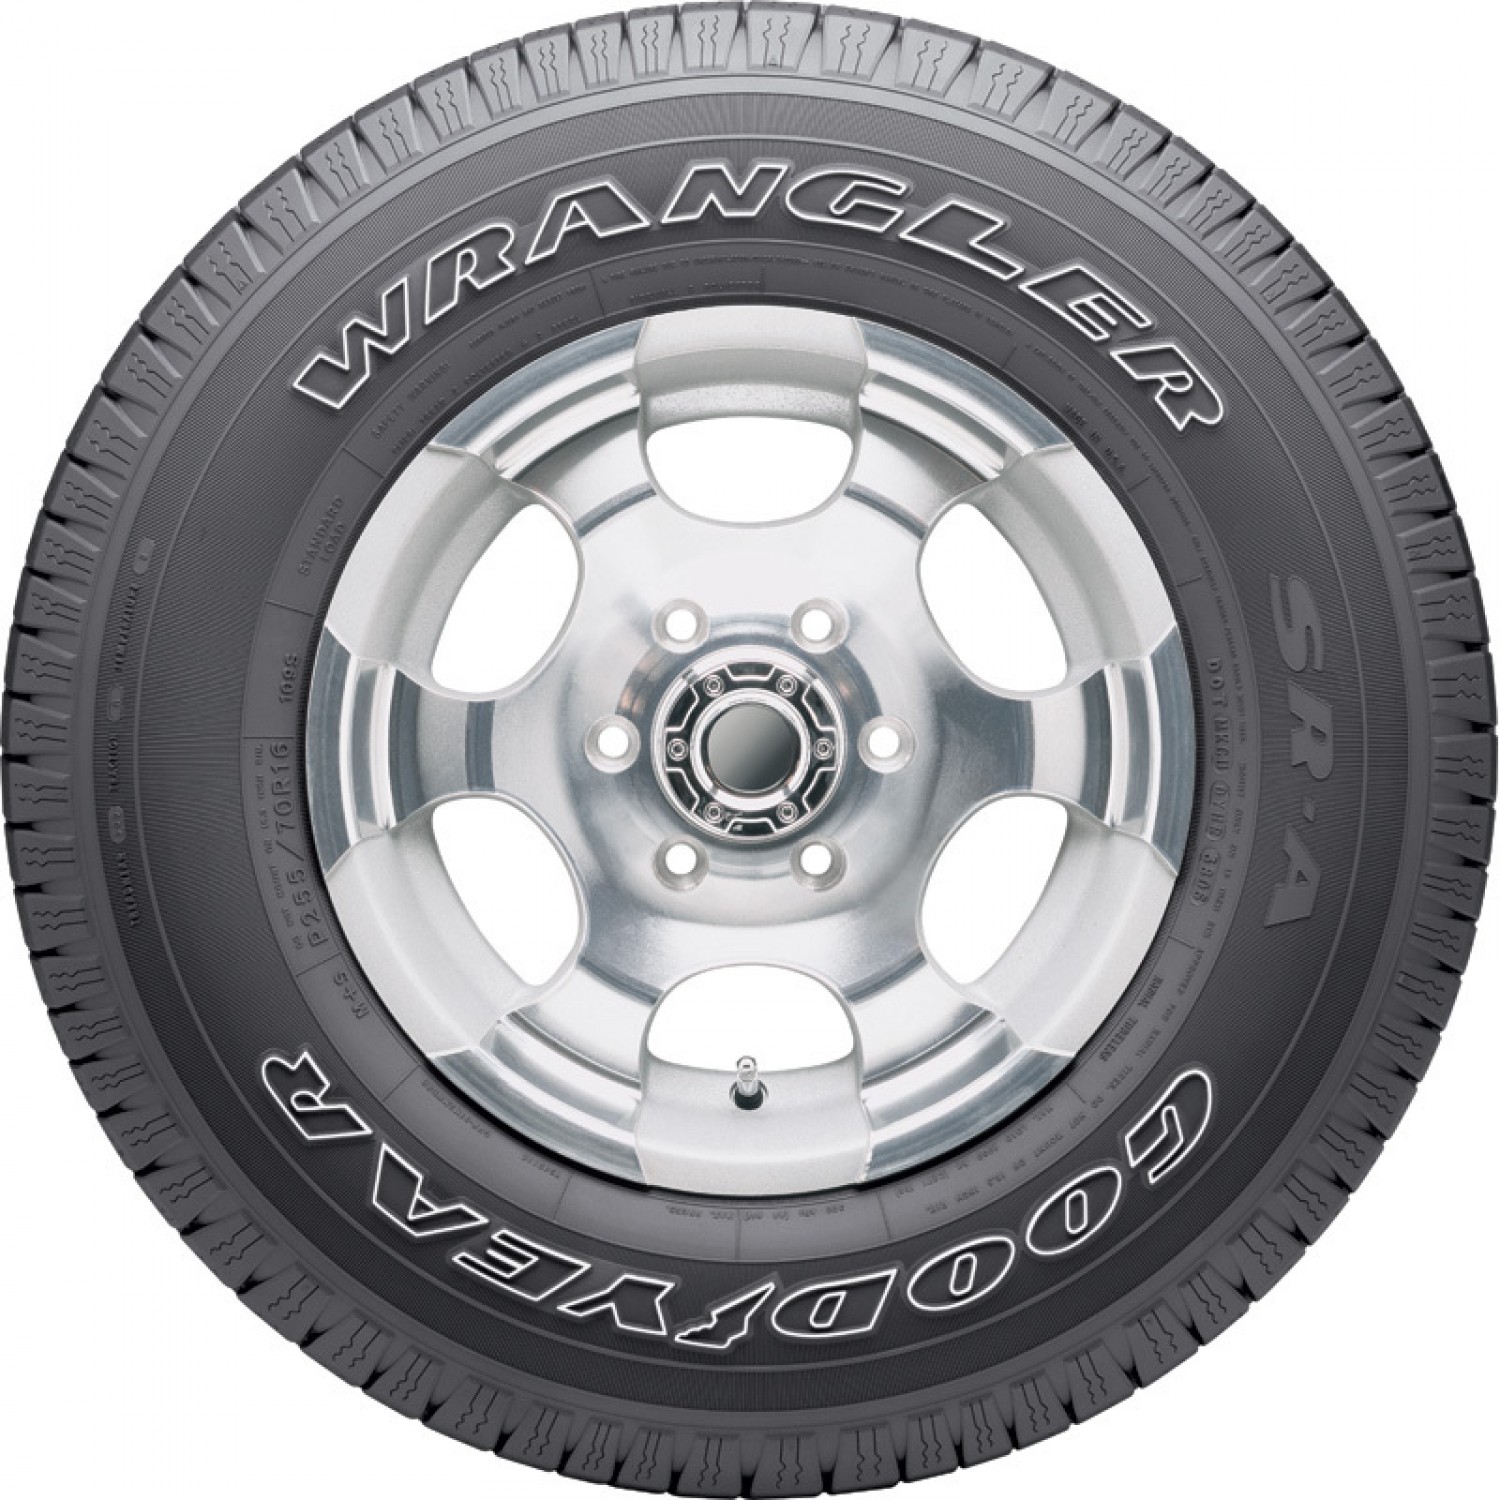 Goodyear Wrangler SR-A Outlined White Letters Tire (P265/70R17 113R)  vzn121216